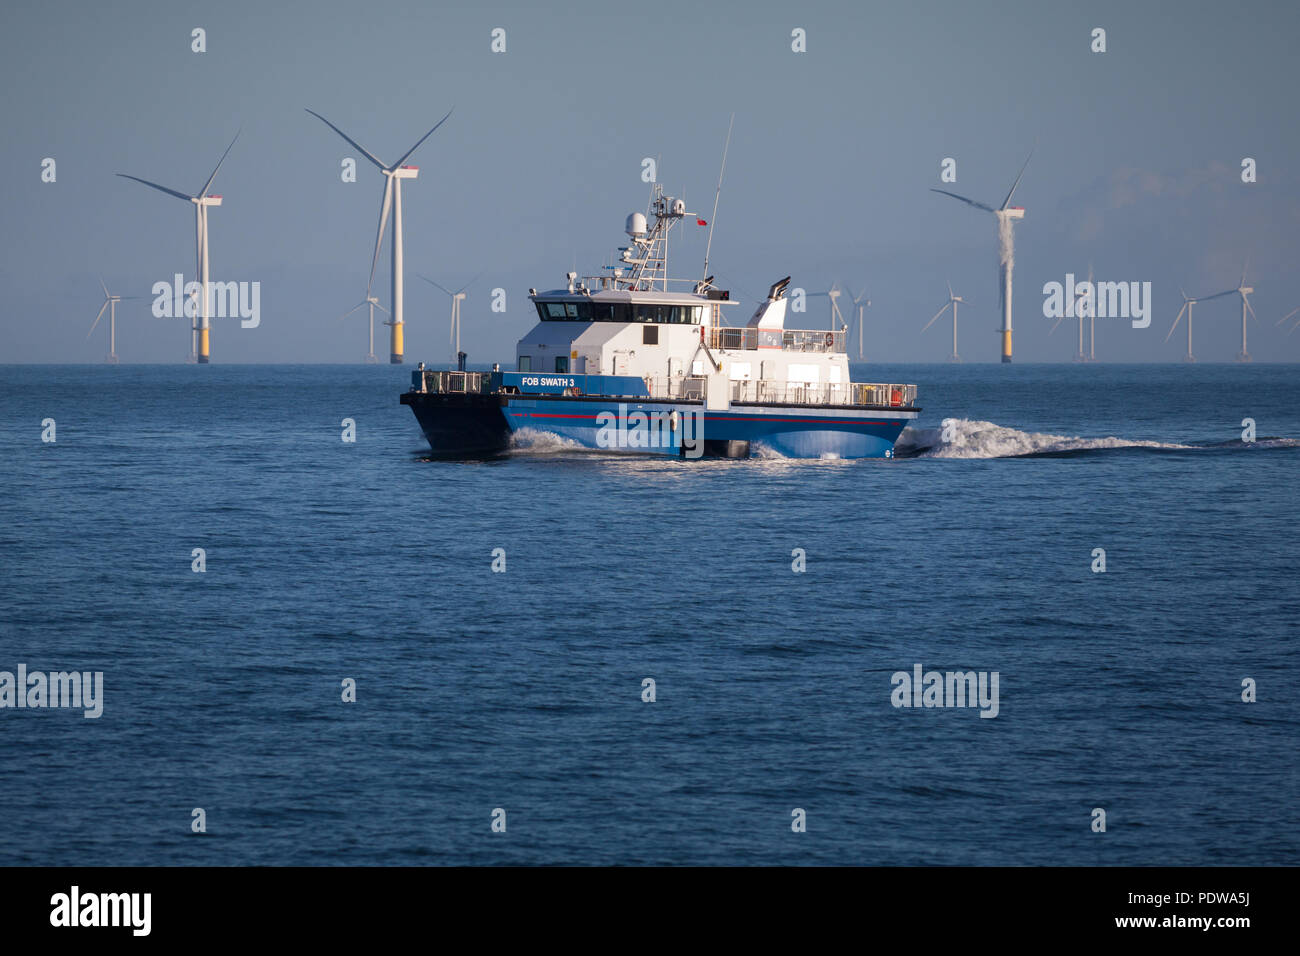 La transferencia de la tripulación de buques, Fob Swath 3, trabajando en la extensión Walney parque eólico offshore Foto de stock